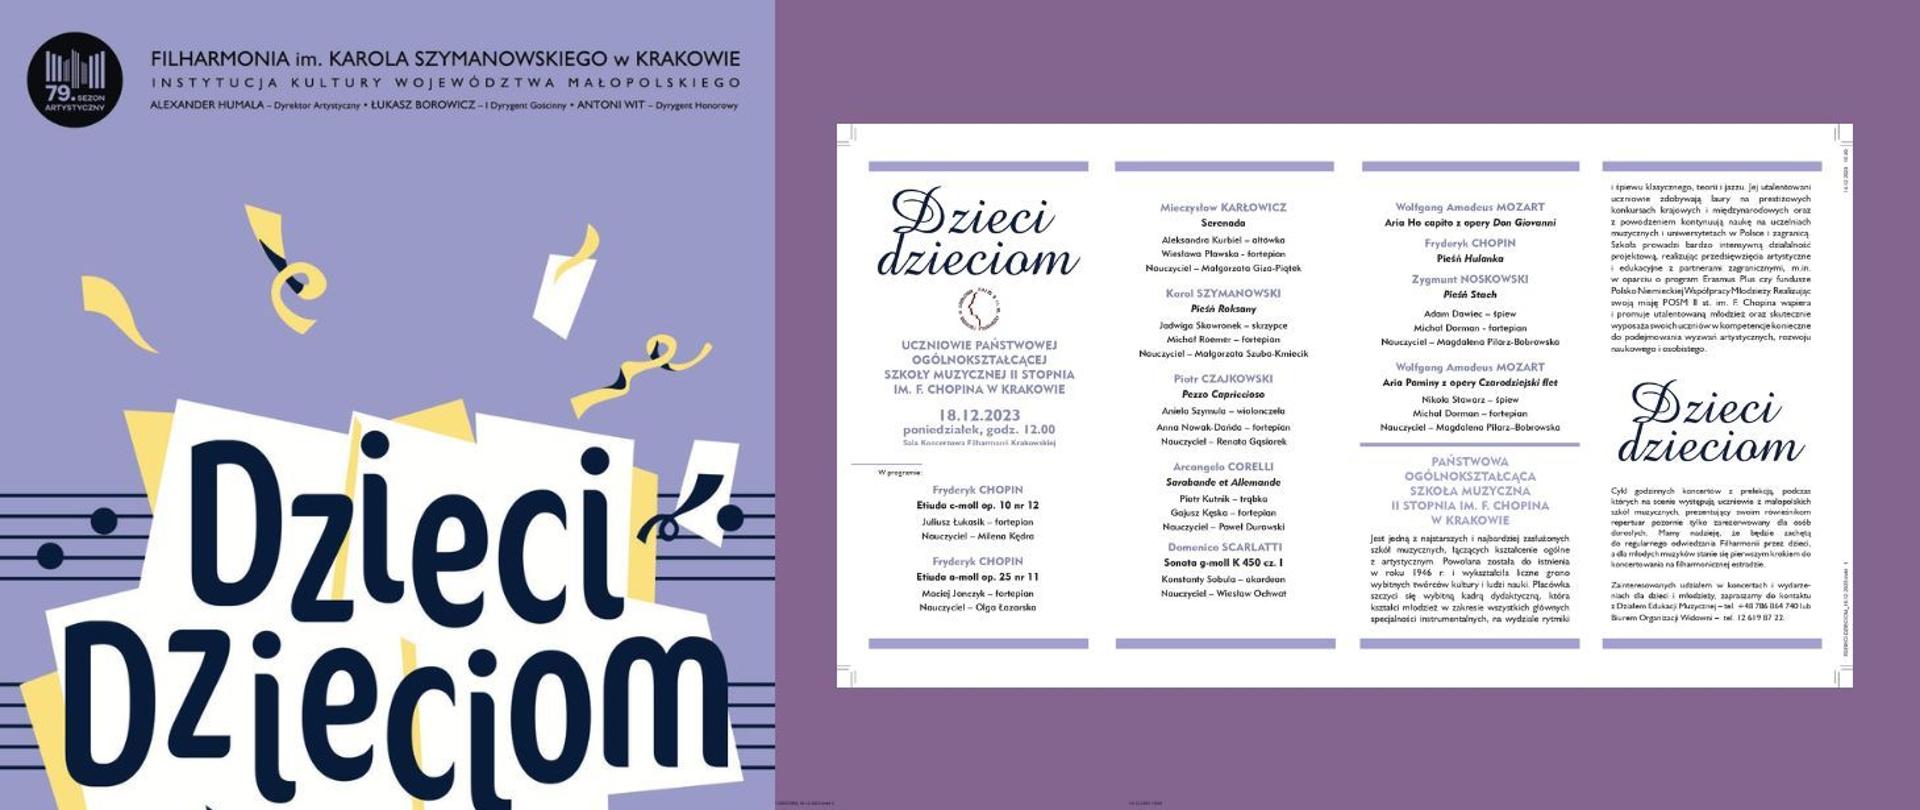 Plakat koncertu, fioletowe tło, w lewym górnym rogu logo i nazwa Filharmonii Krakowskie; teksty: Dzieci Dzieciom, po prawej stronie nazwiska wykonawców, krótki opis naszej szkoły i inicjatywy Dzieci Dzieciom